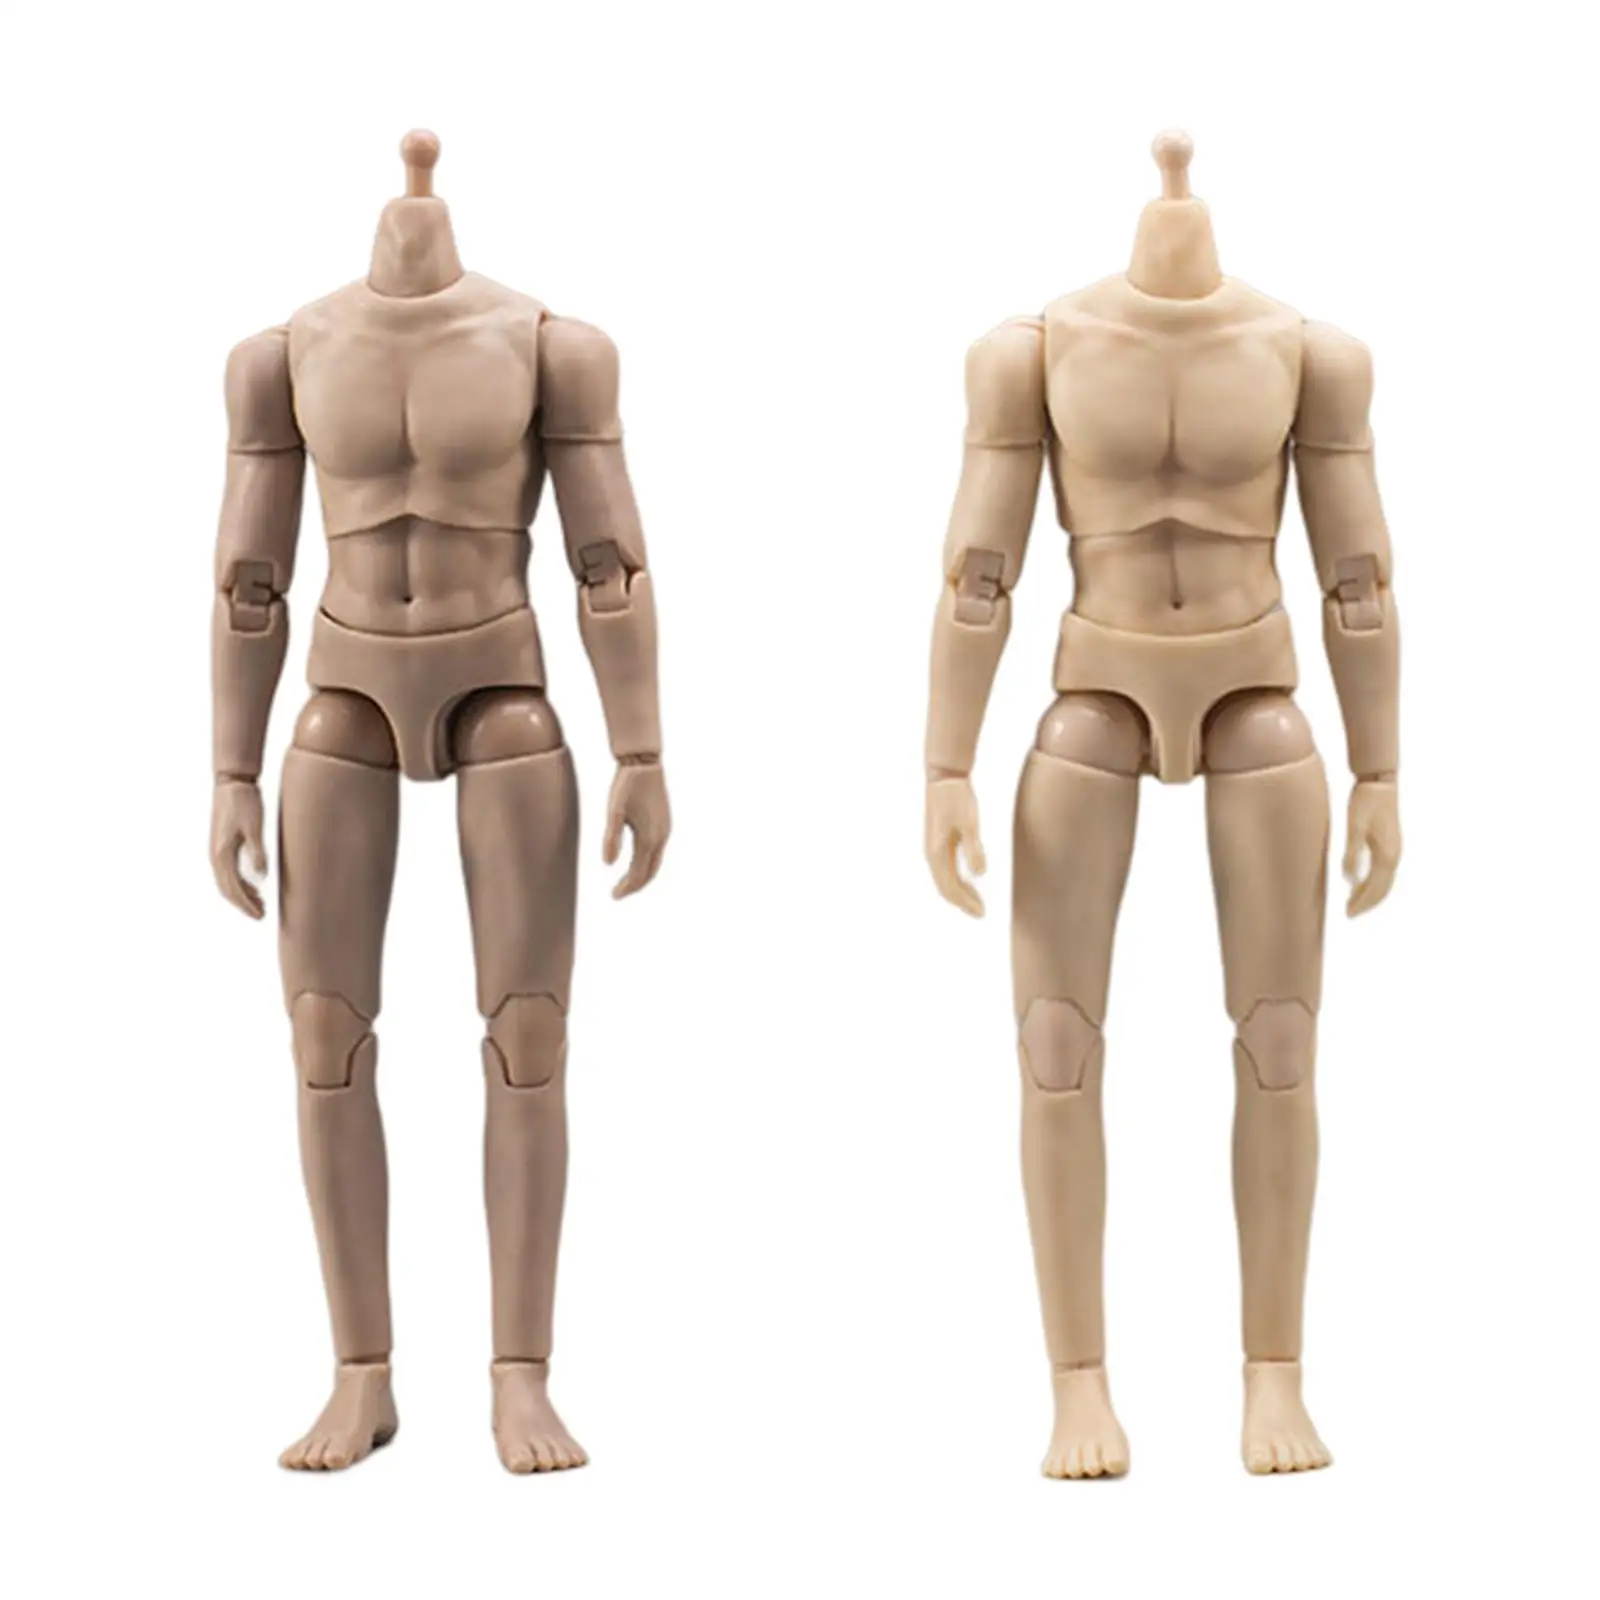 

Модель со стандартным типом тела Мужская 1/12, гибкая бесшовная кукла-тело 6 дюймов для фотографии, реквизит для рисунков, мальчиков-художников